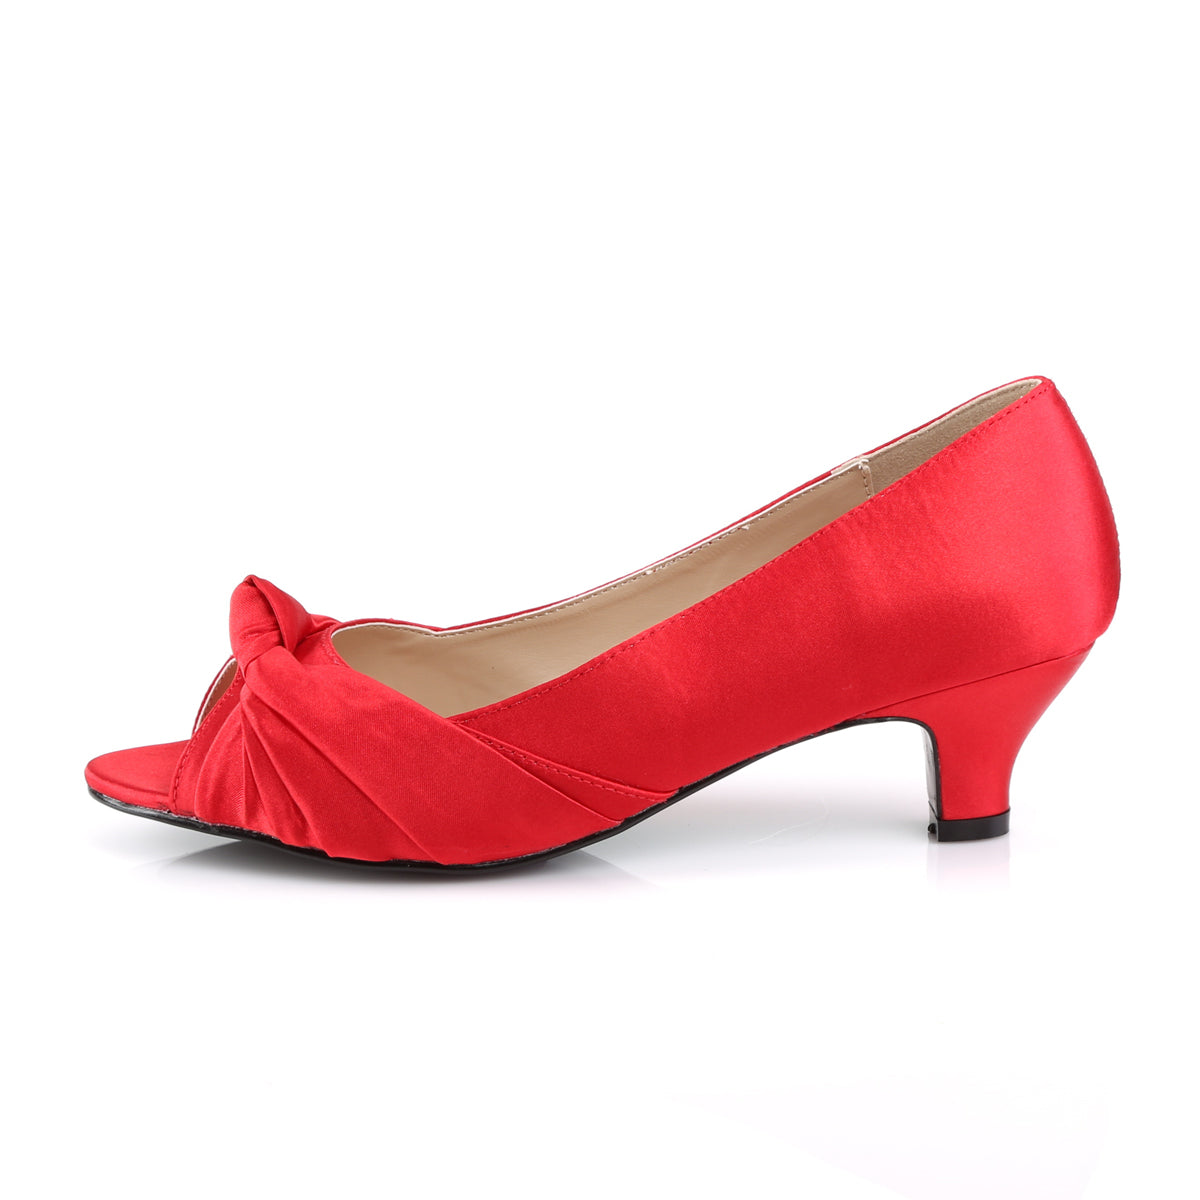 FAB-422 Pleaser Pink Label 2" Heel Red Satin Fetish Footwear-Pleaser Pink Label- High Heels for Men